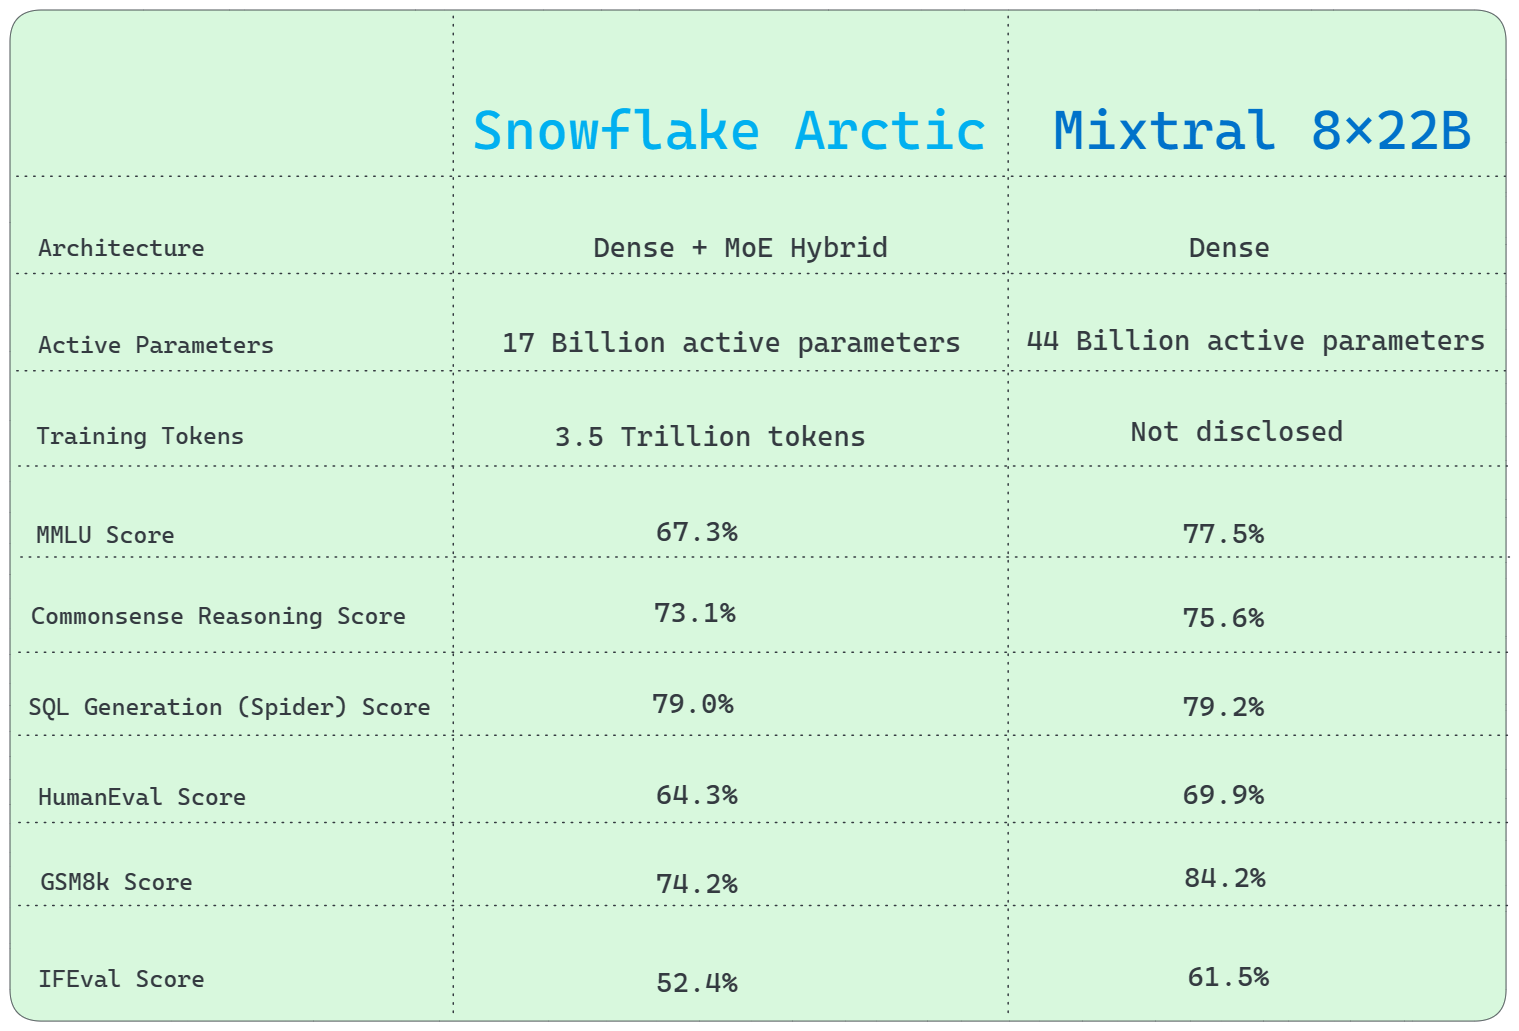 Snowflake Arctic vs. Mixtral 8x22B